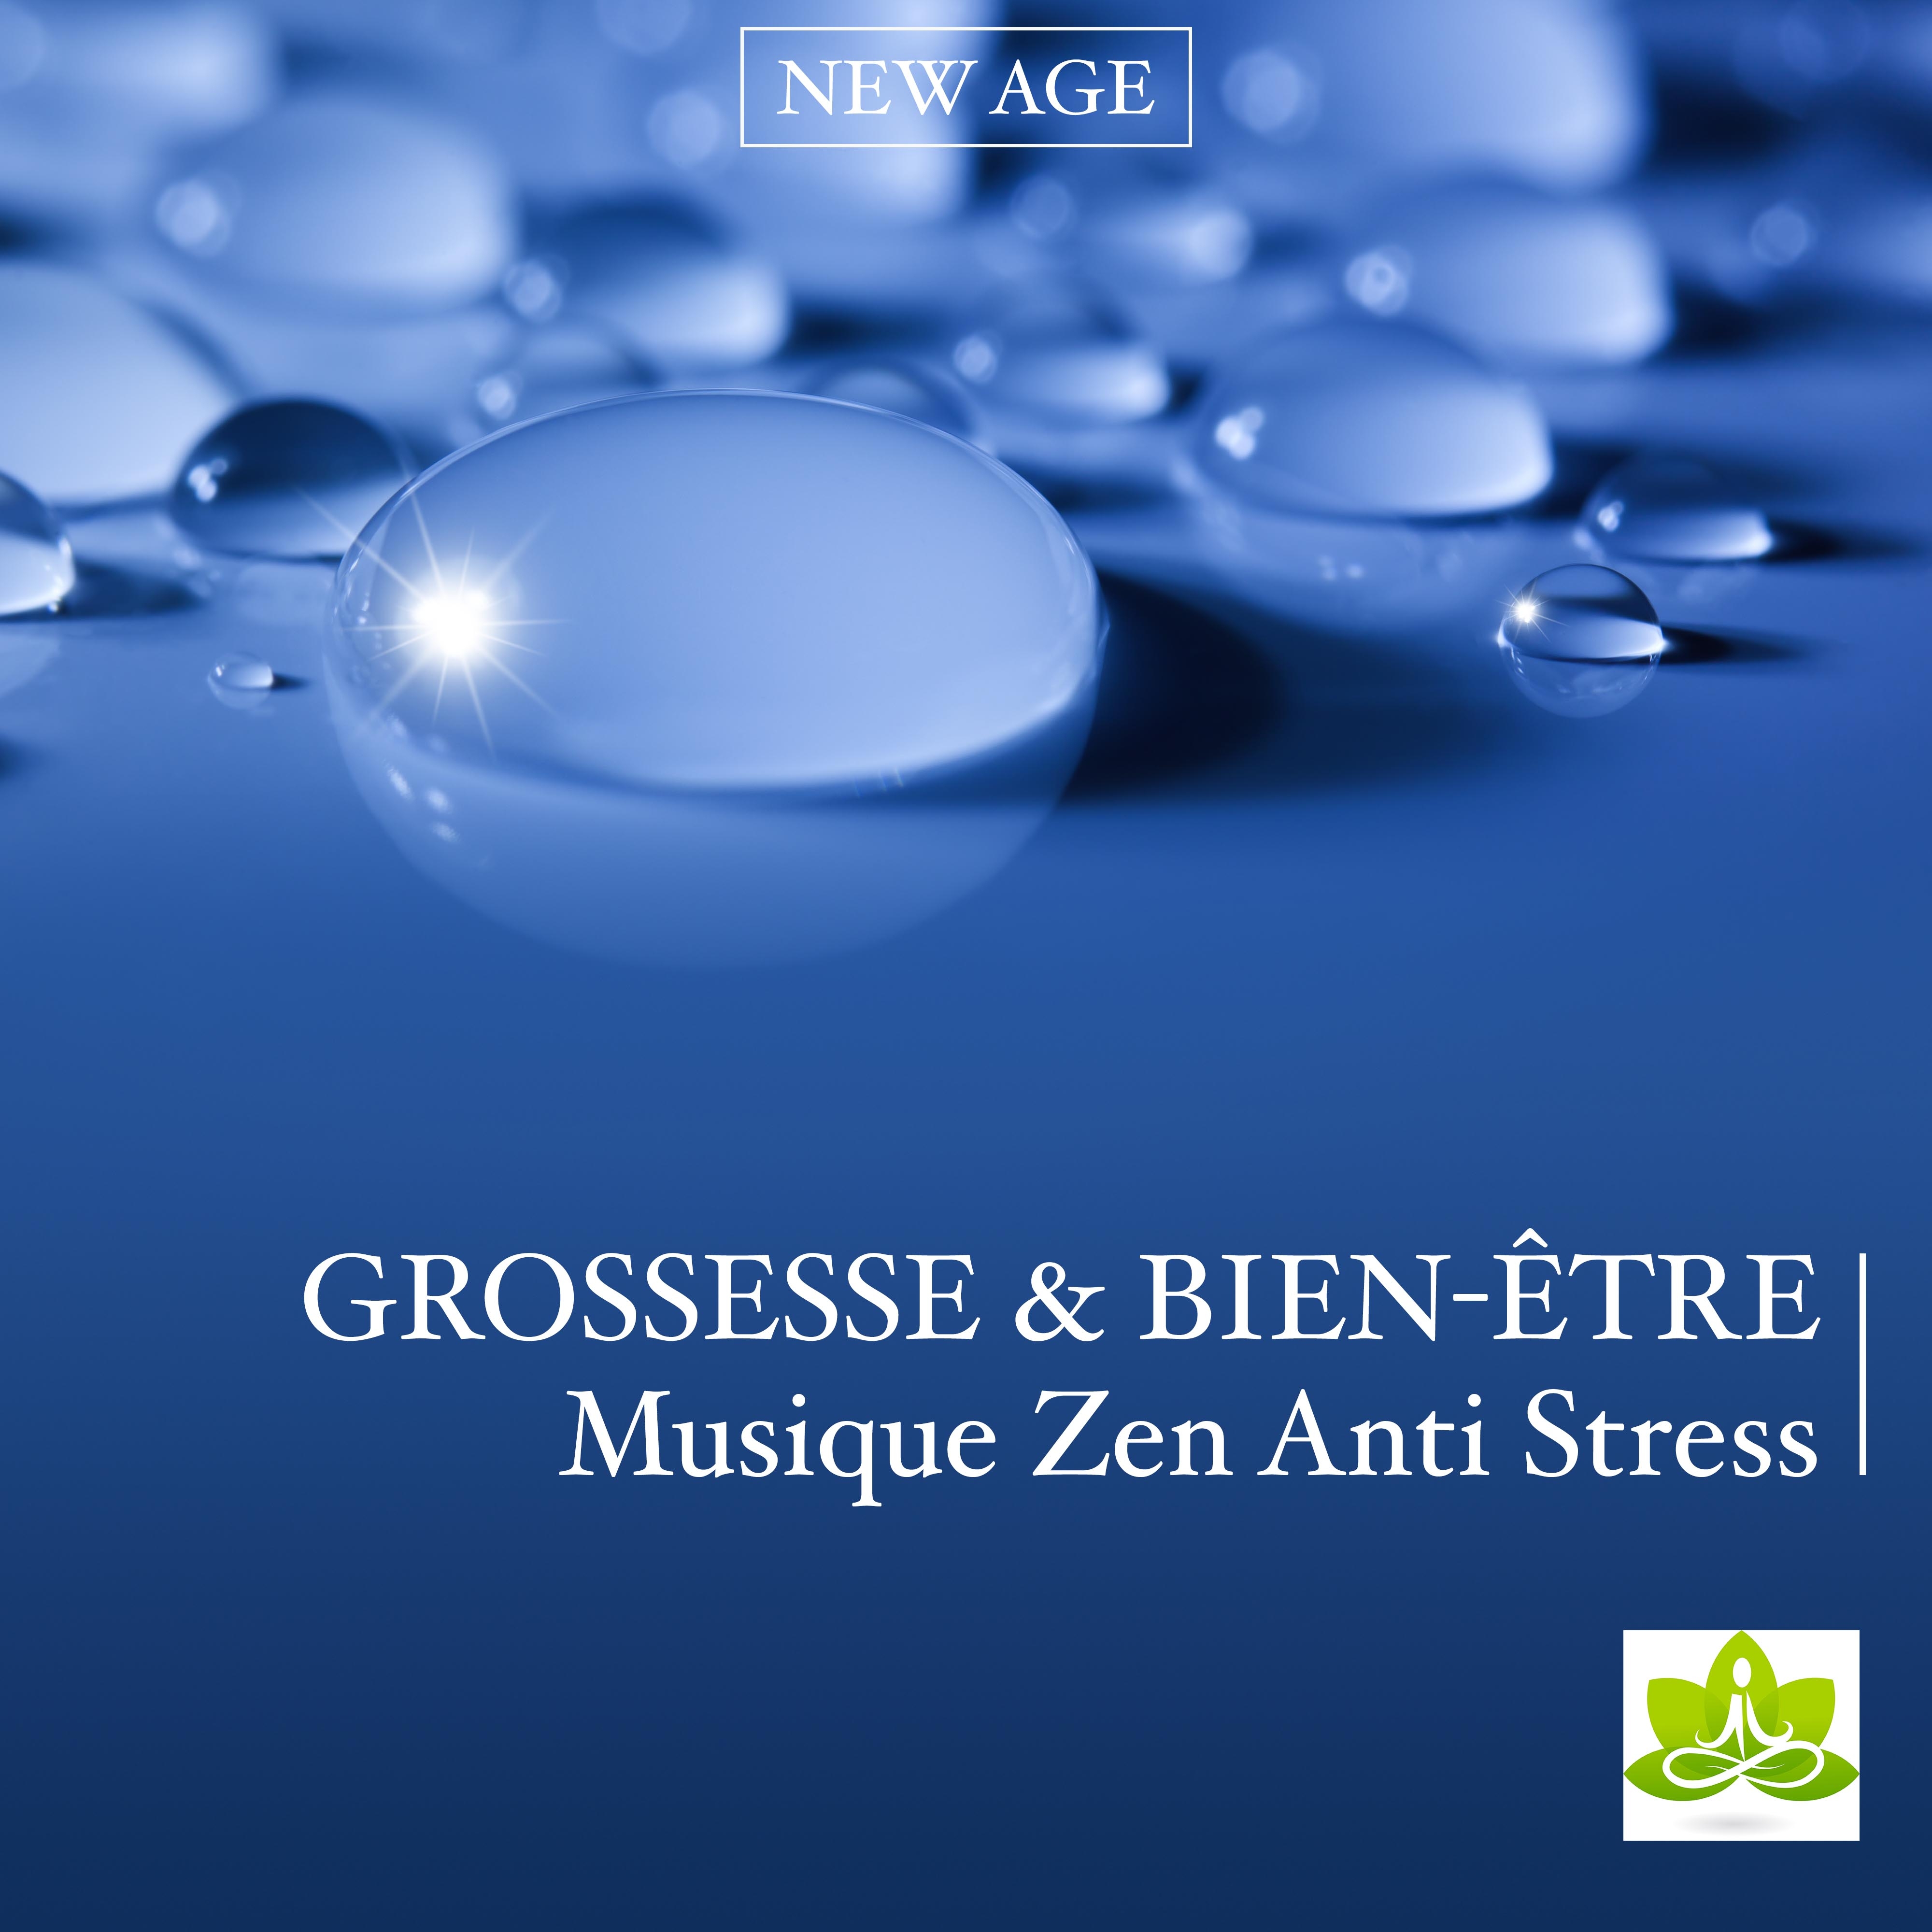 Grossesse & Bien-être avec New Age: Musique Zen Anti Stress pour Maman & Berceuse New Age pour Bebe, Musique Relaxation Détente pour Accouchement & Naissance